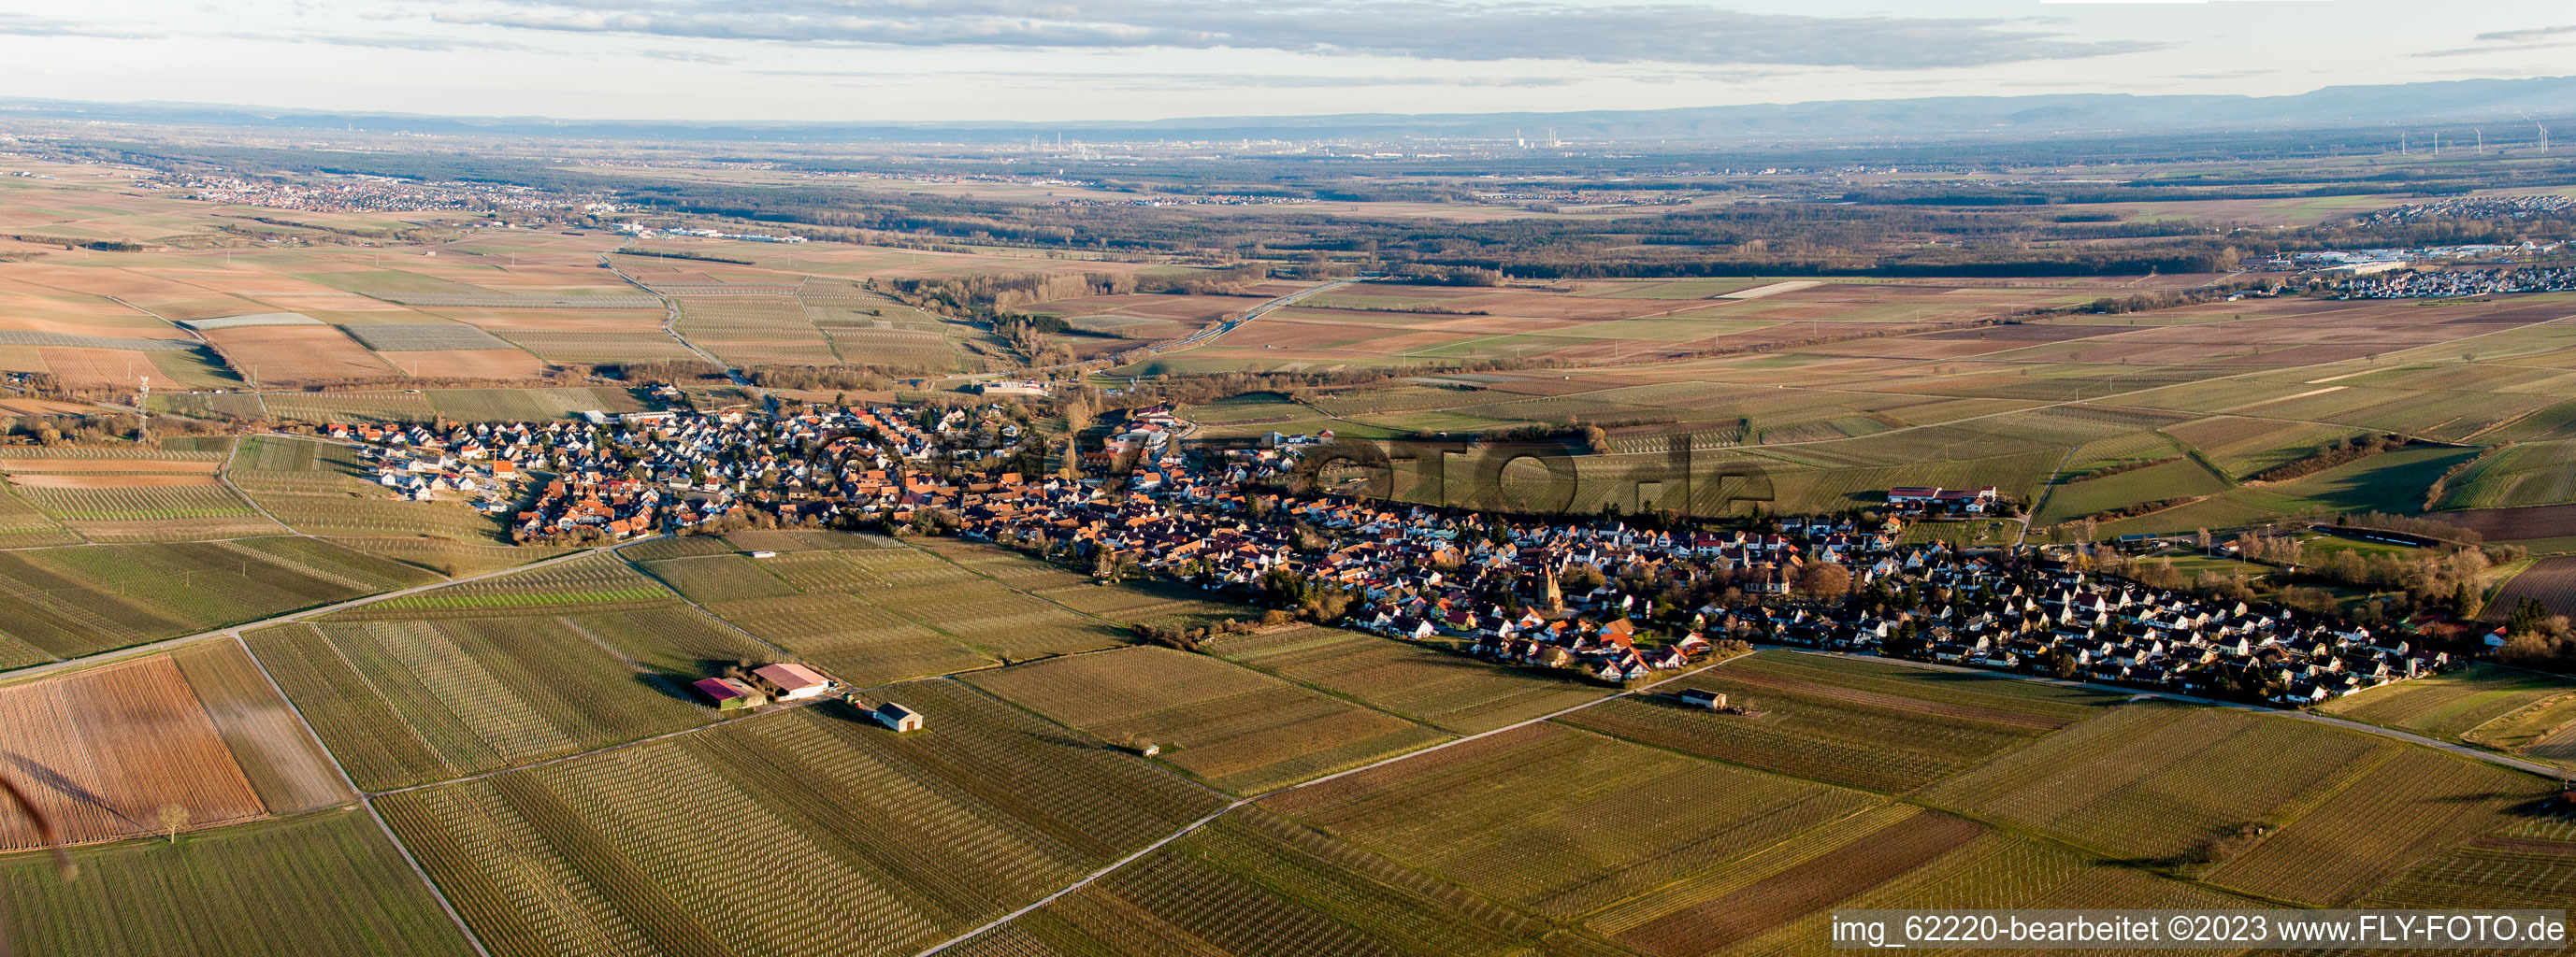 Insheim im Bundesland Rheinland-Pfalz, Deutschland von der Drohne aus gesehen